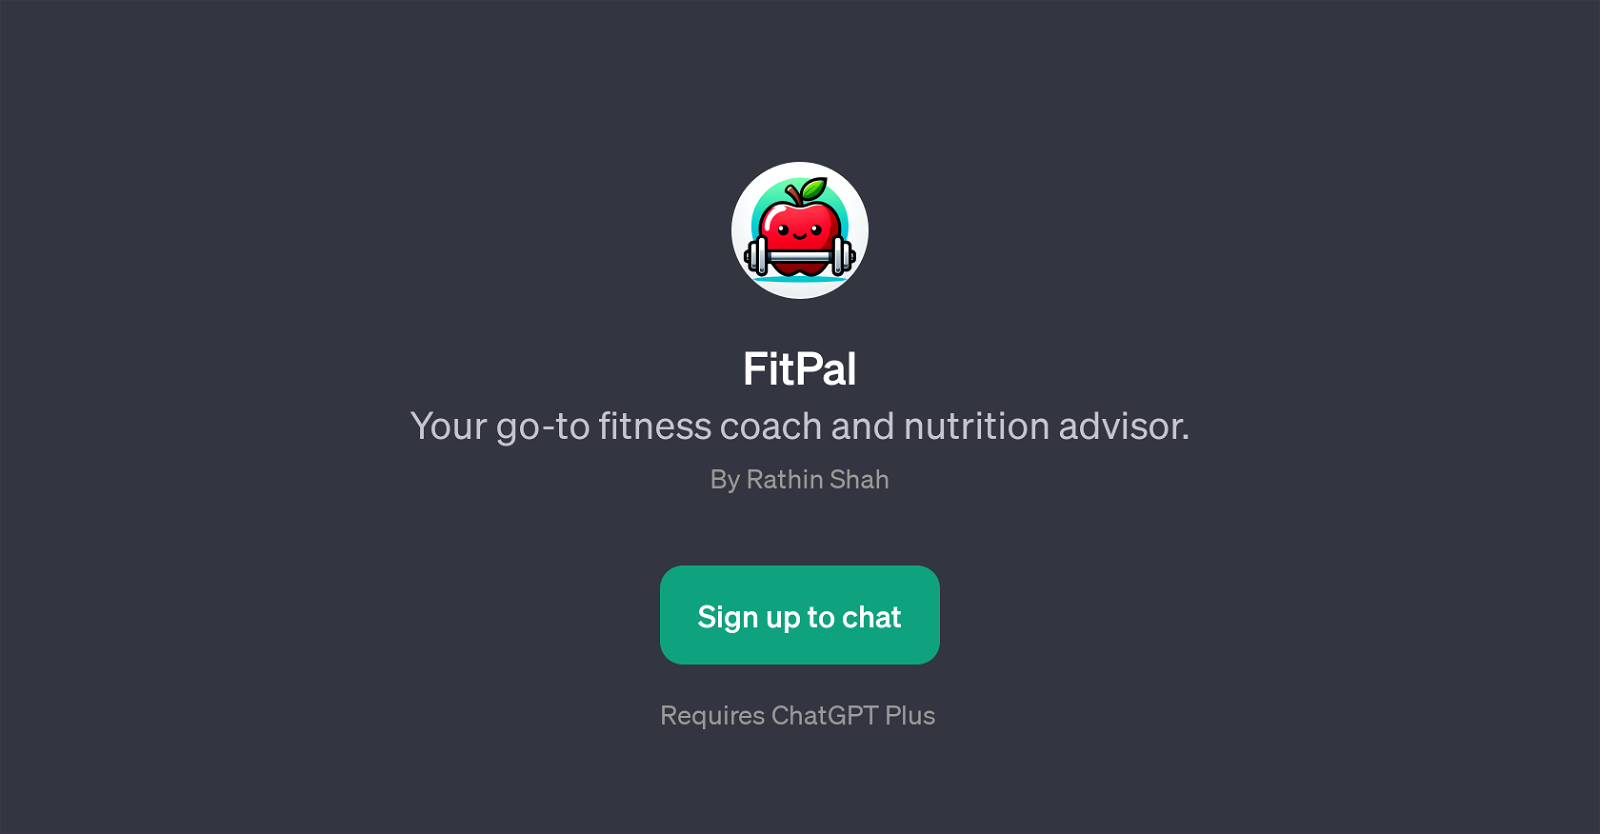 FitPal website